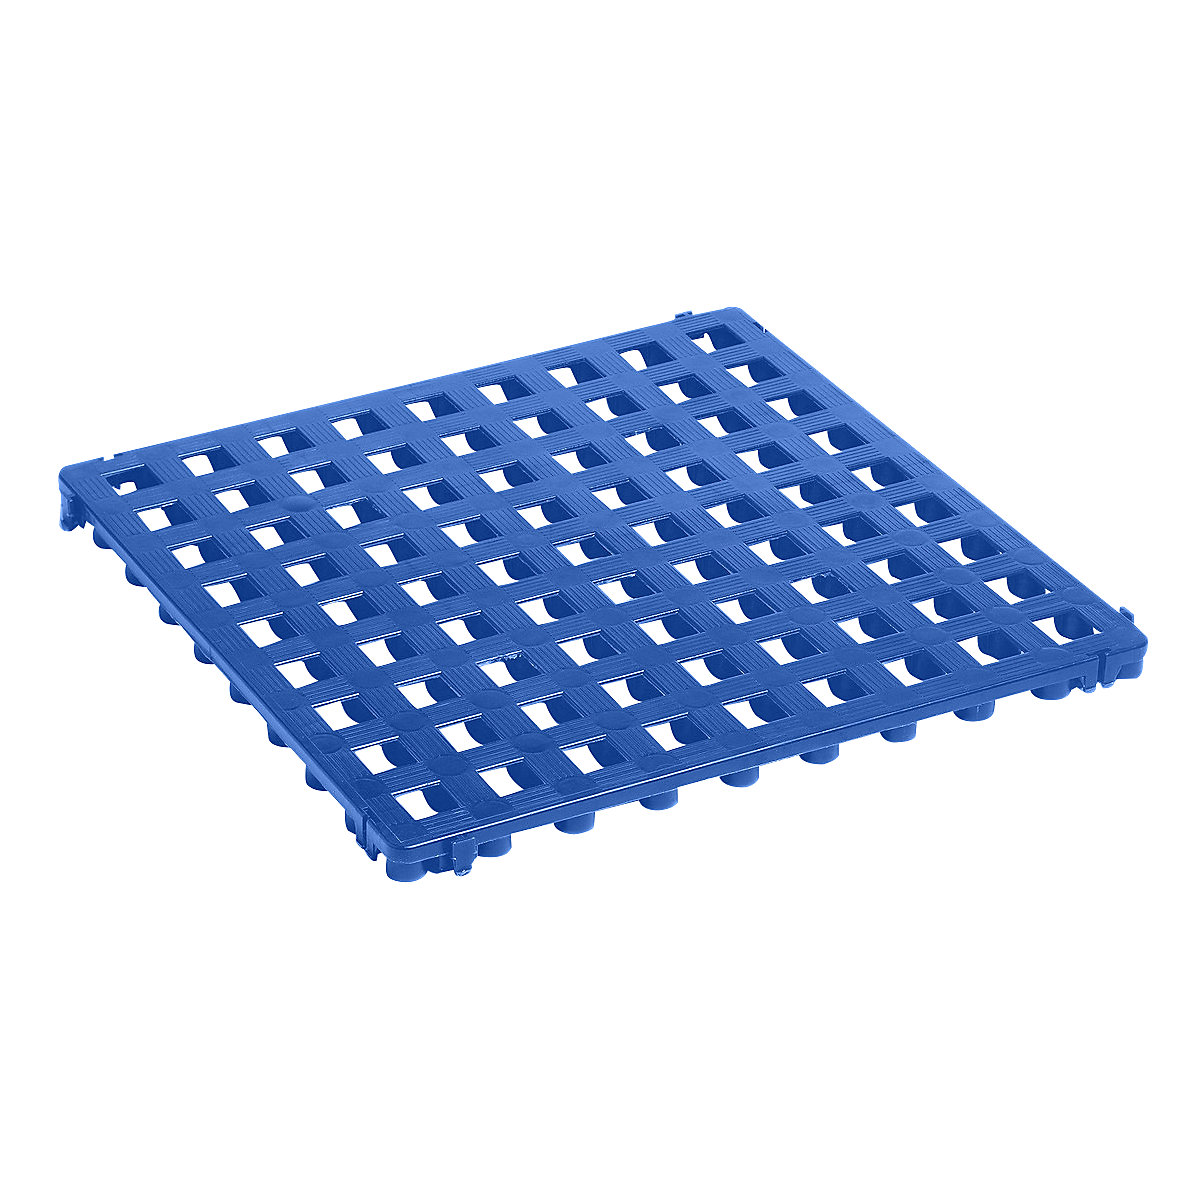 Plastic floor tile, polyethylene, 500 x 500 mm, standard, pack of 20, blue